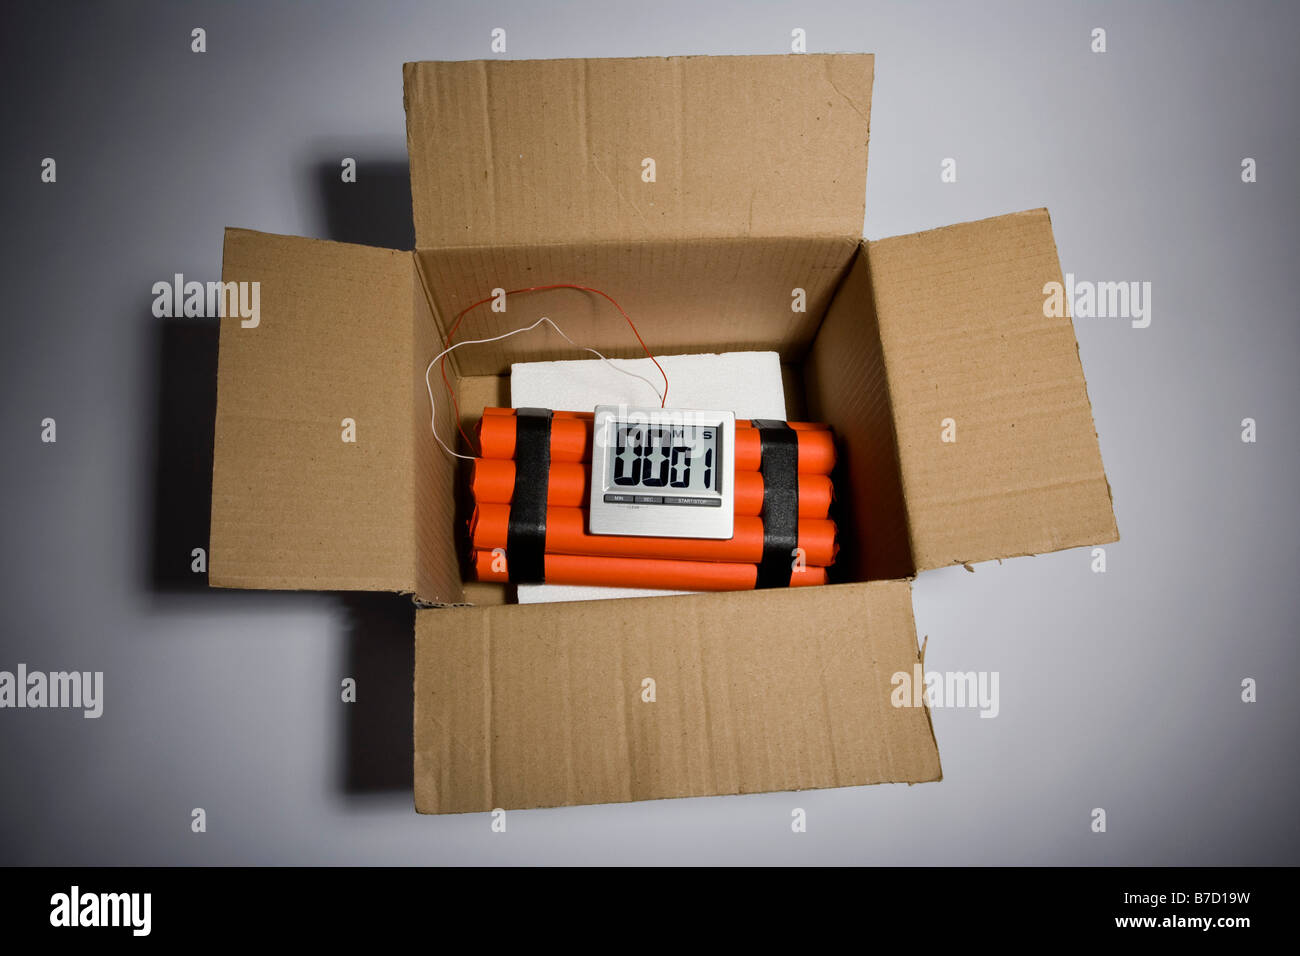 Un tempo di dinamite bomba in una scatola di cartone con 1 secondo di  sinistra sul timer Foto stock - Alamy